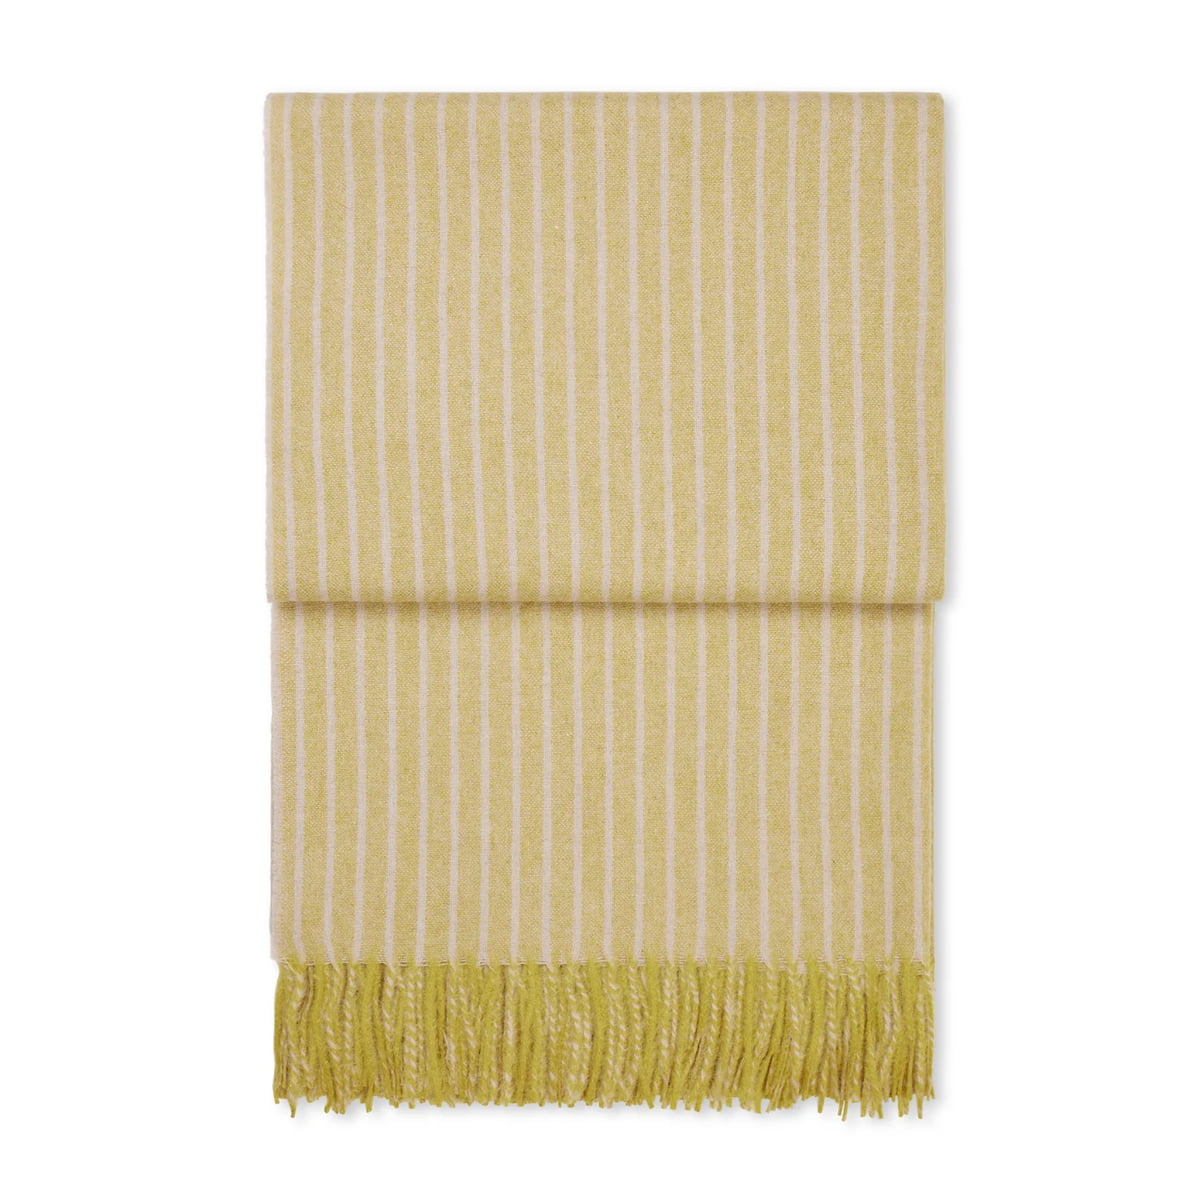 elvang - stripes couverture, jaune clair